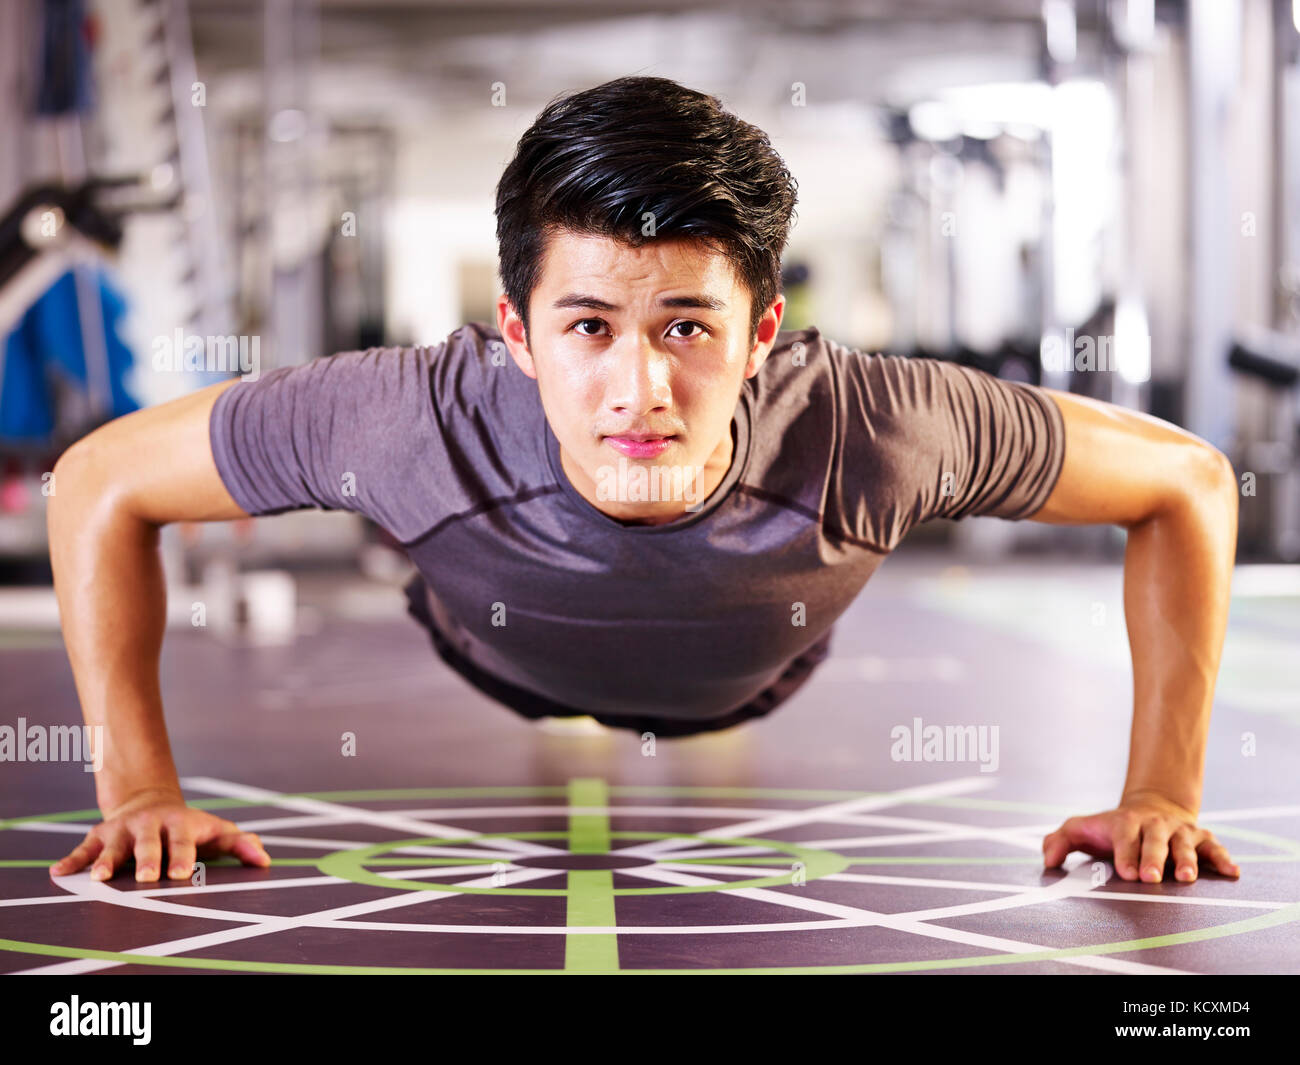 Jungen asiatischen erwachsenen Mann das Trainieren im Fitnessstudio tun pushups, frontale Ansicht. Stockfoto